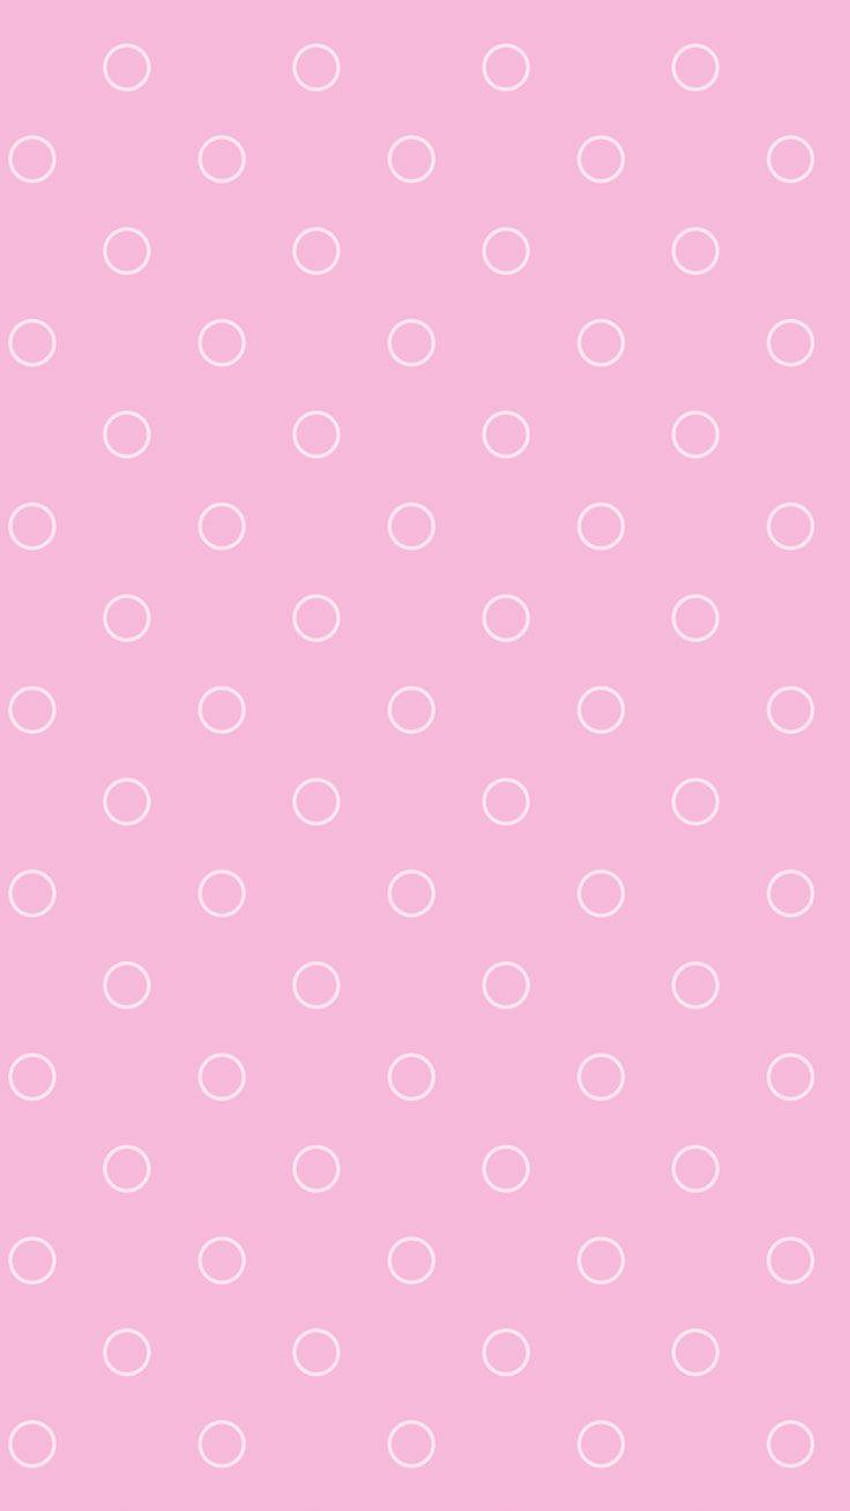 Hình nền iPhone hồng chấm bi (Polkadot soft pink background iPhone wallpaper): Với hình nền hồng chấm bi, chiếc iPhone của bạn sẽ trở nên cuốn hút hơn bao giờ hết. Tông màu hồng tươi và chấm bi nhỏ mang đến sự thu hút và tươi mới cho màn hình. Hãy thử trải nghiệm điều đó trên chiếc iPhone của bạn ngay bây giờ!